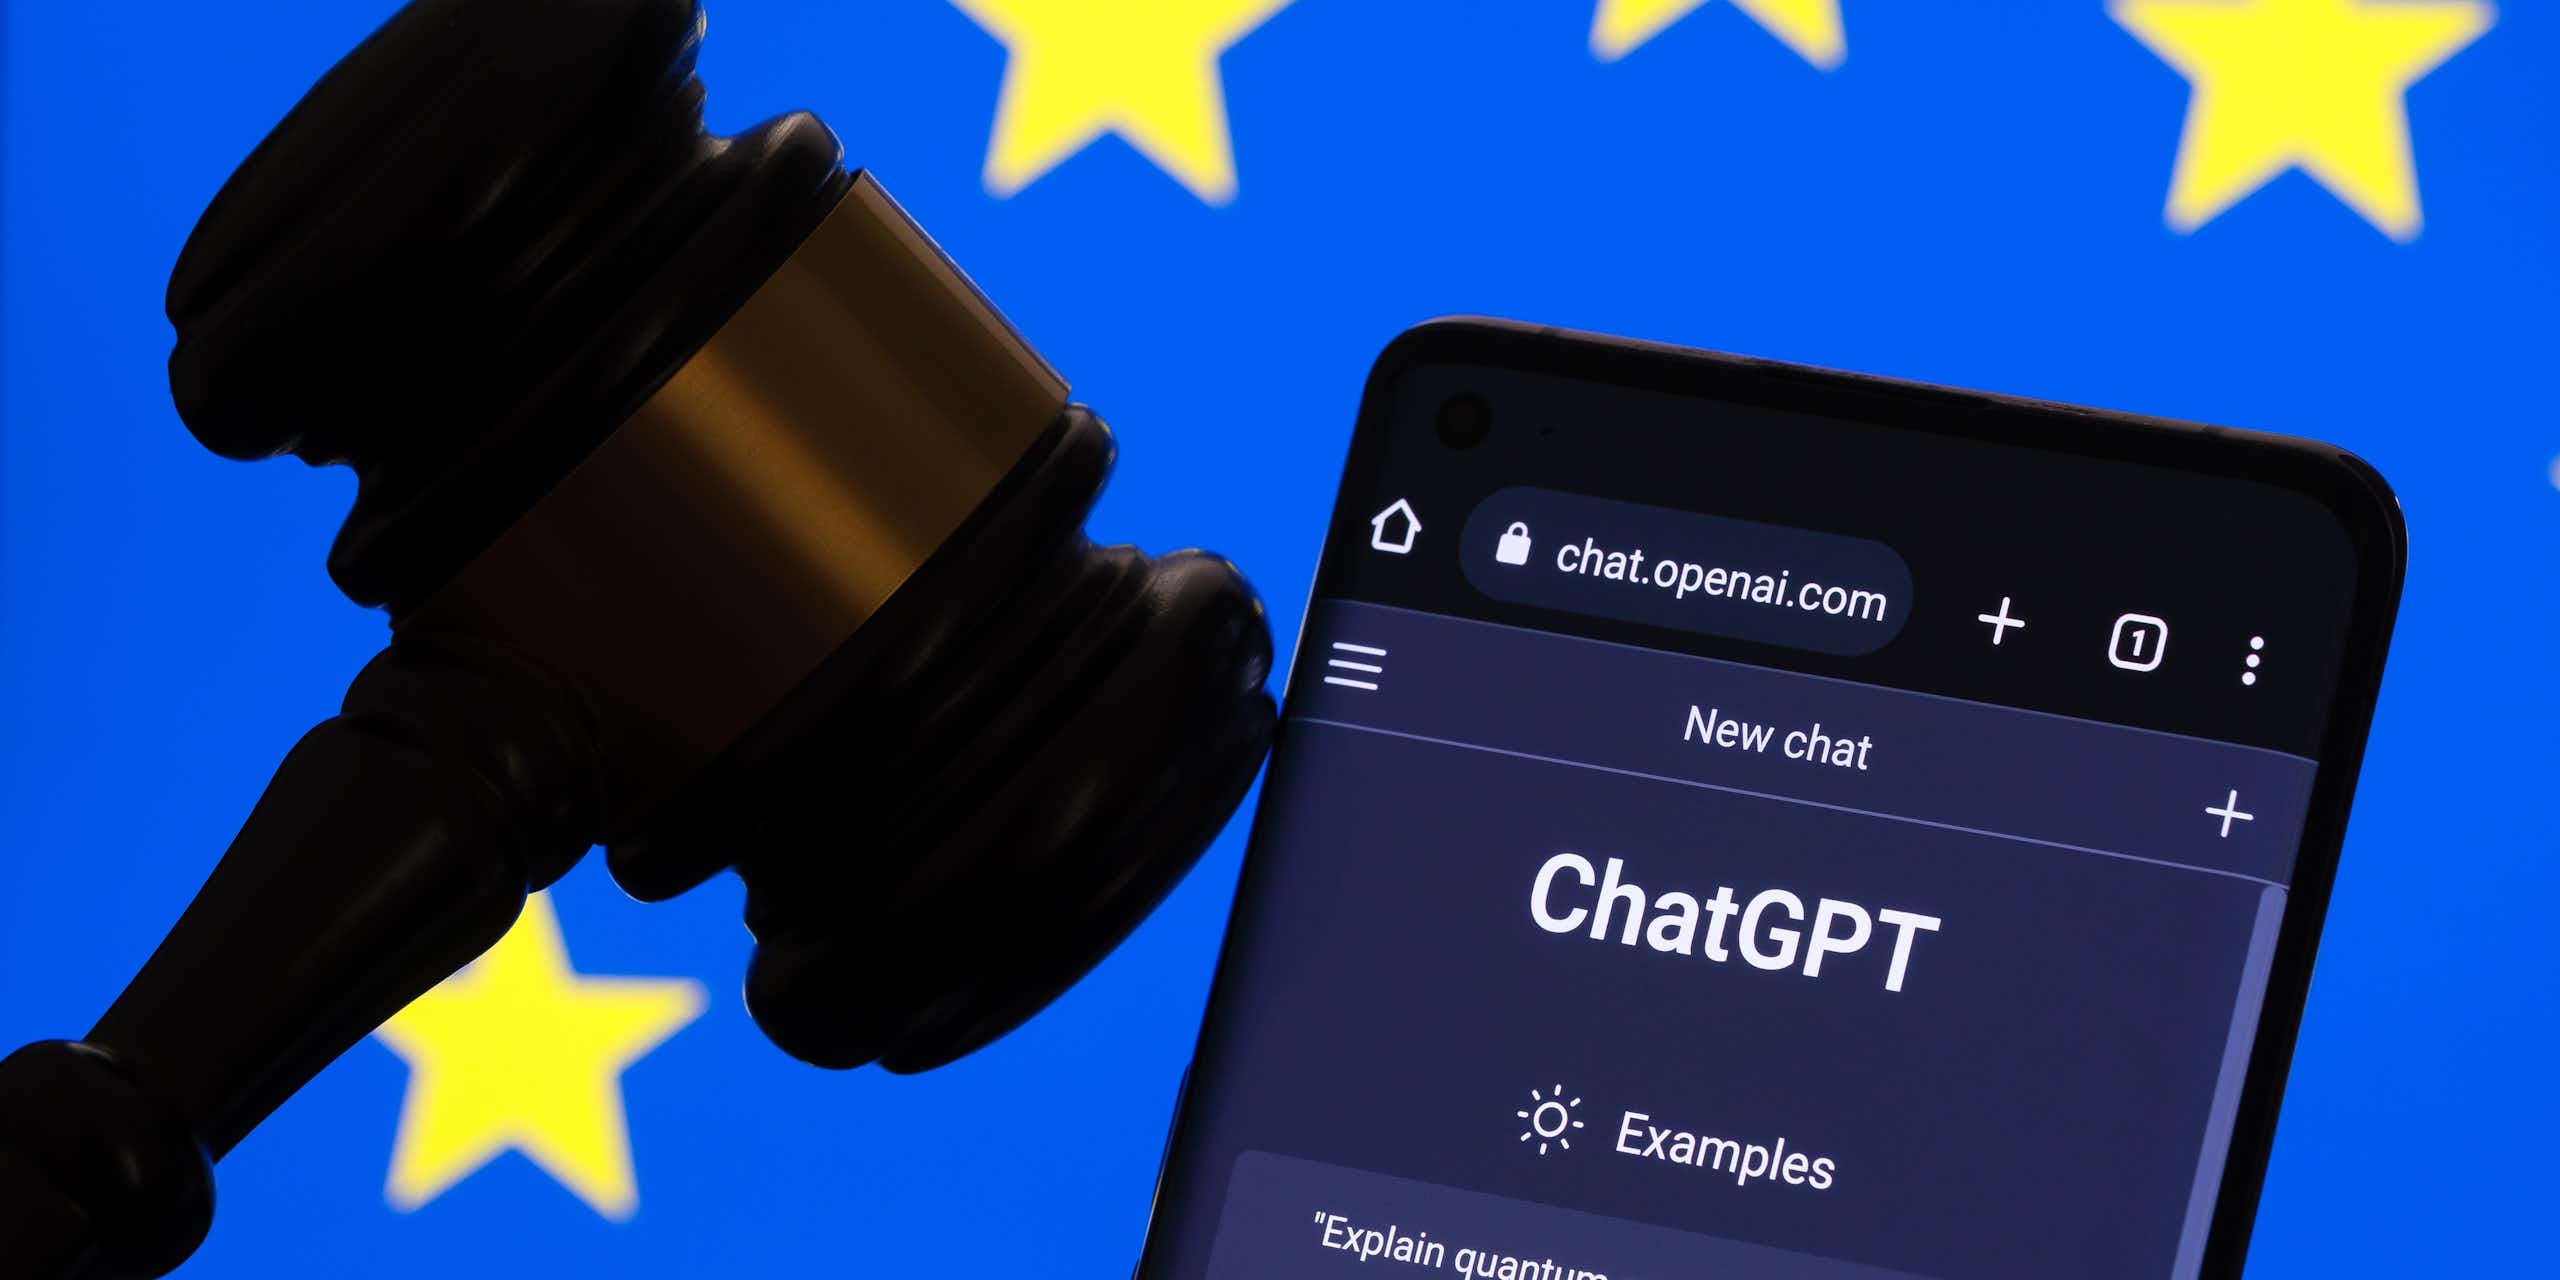 Le site internet de ChatGPT ouvert sur un téléphone, à côté d'un maillet de juge, devant un drapeau européen.